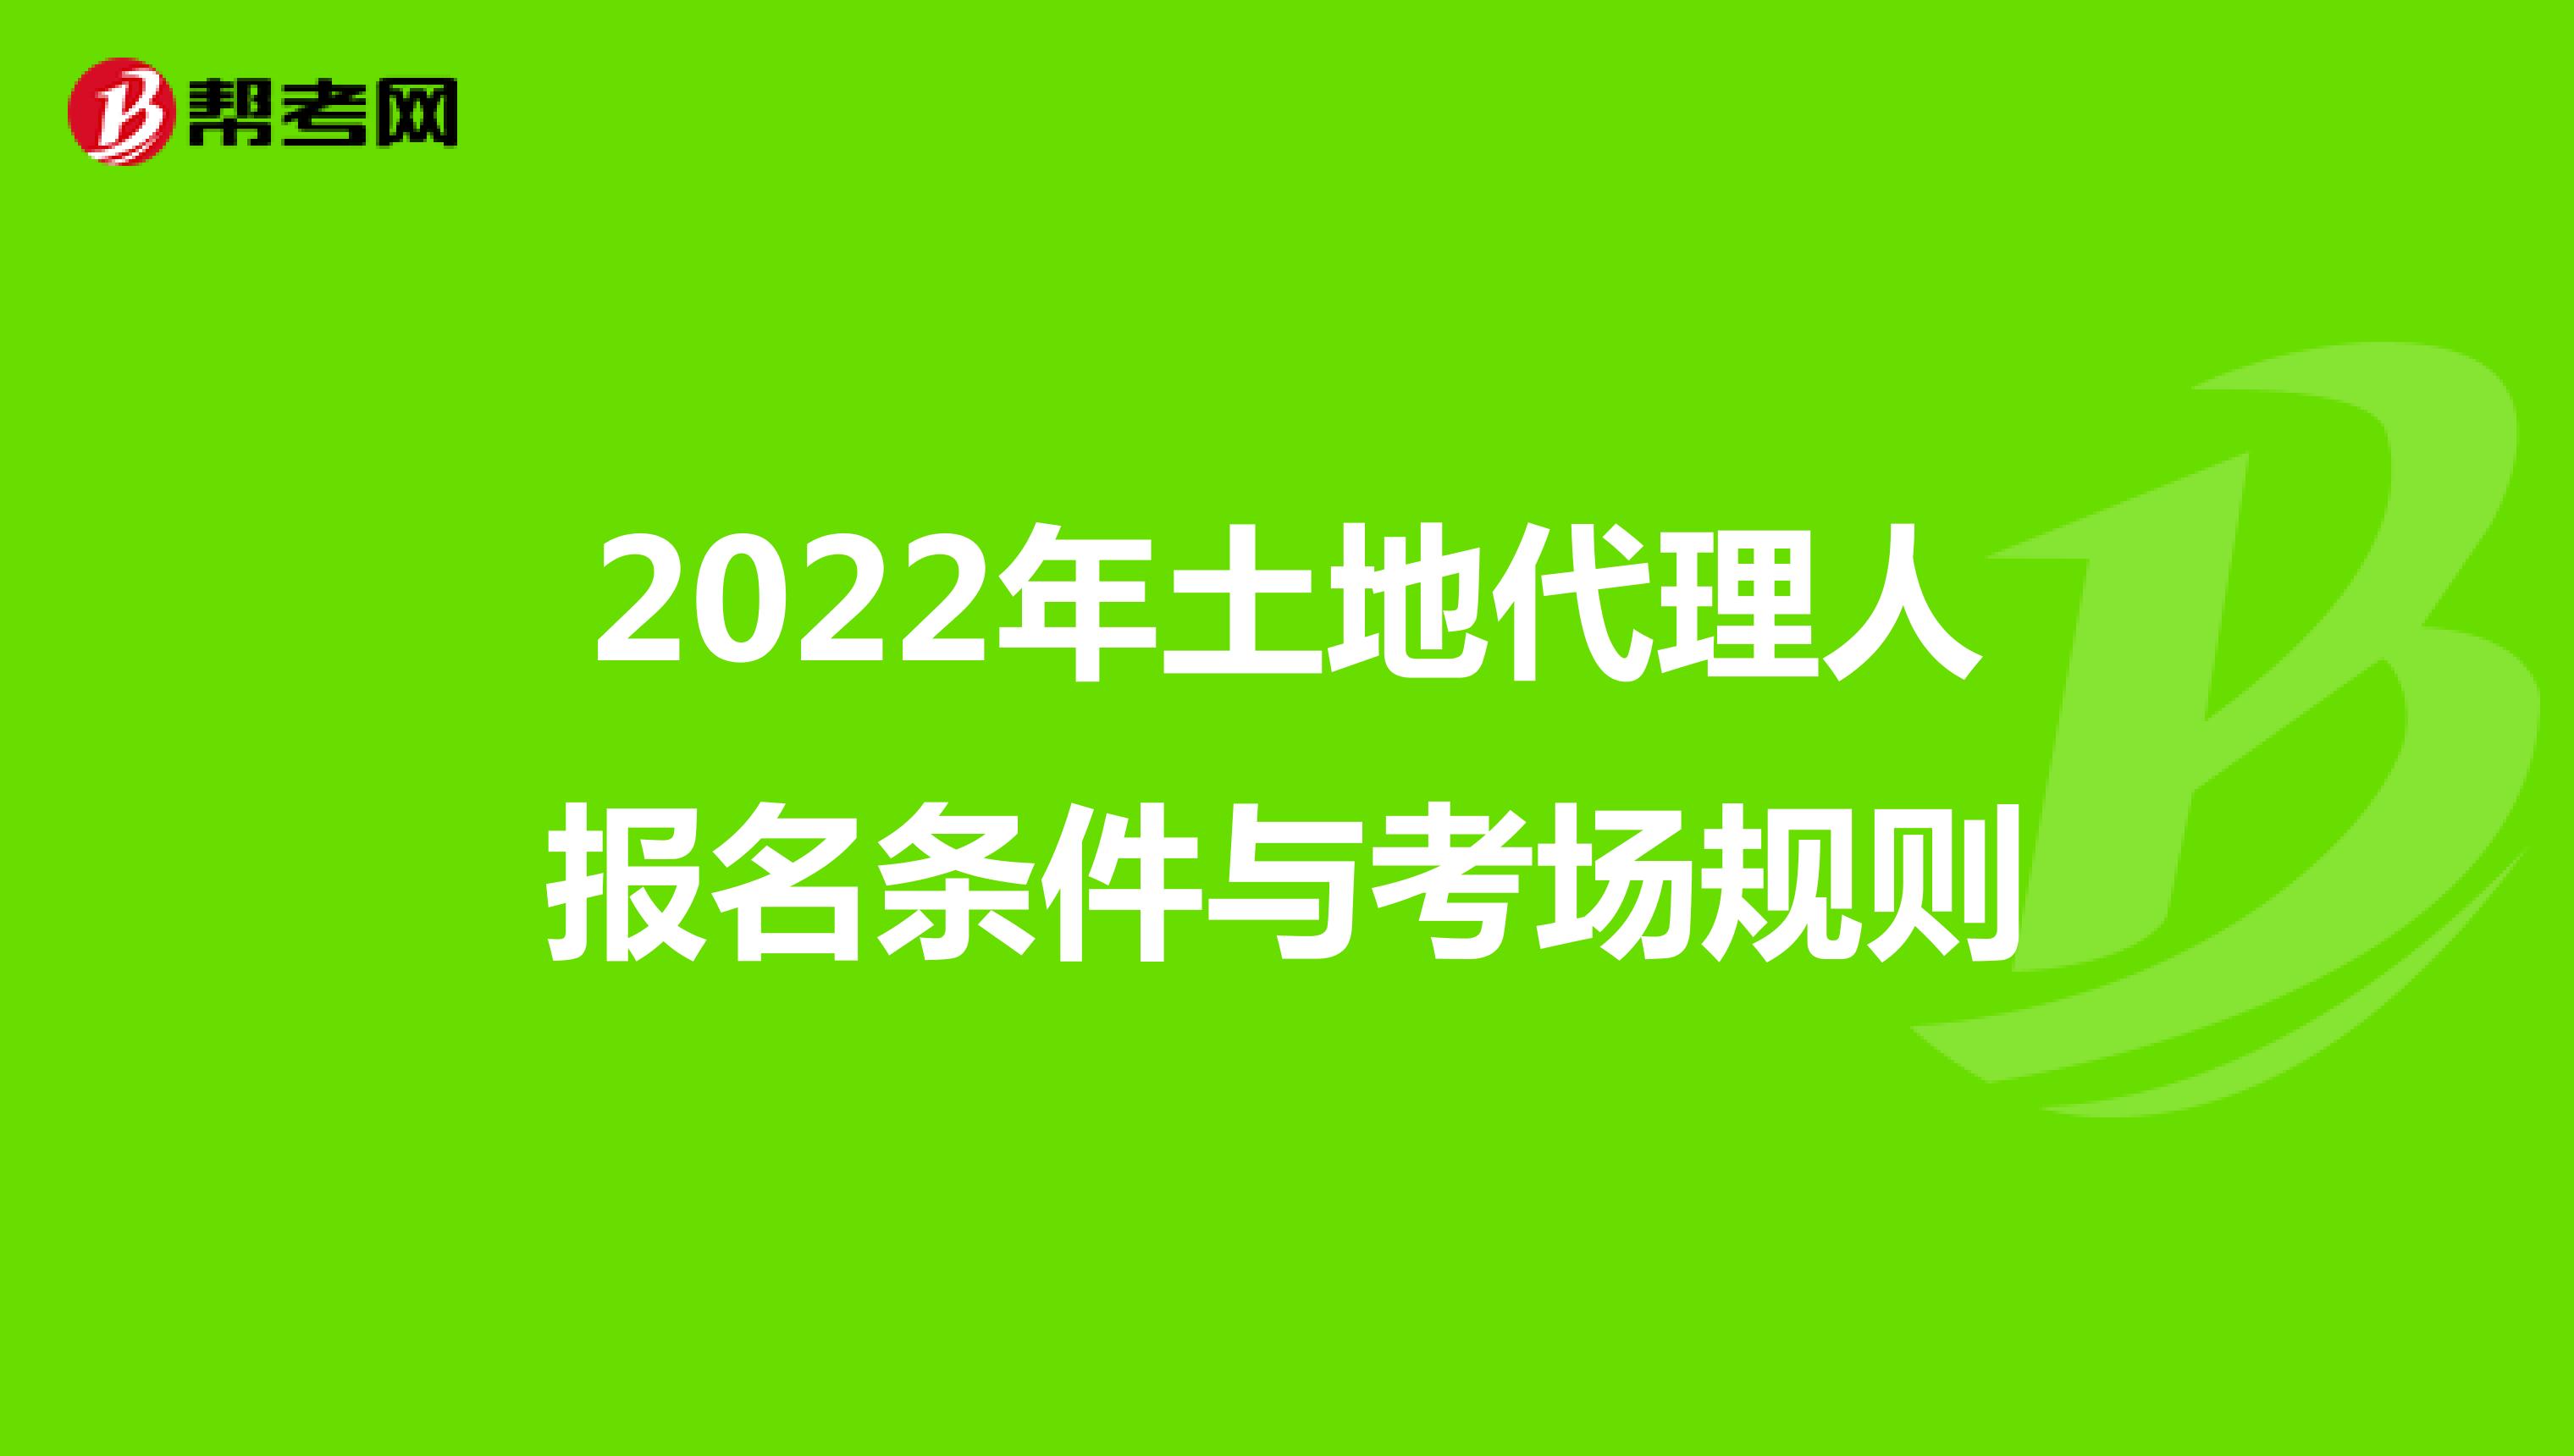 2022年土地代理人报名条件与考场规则